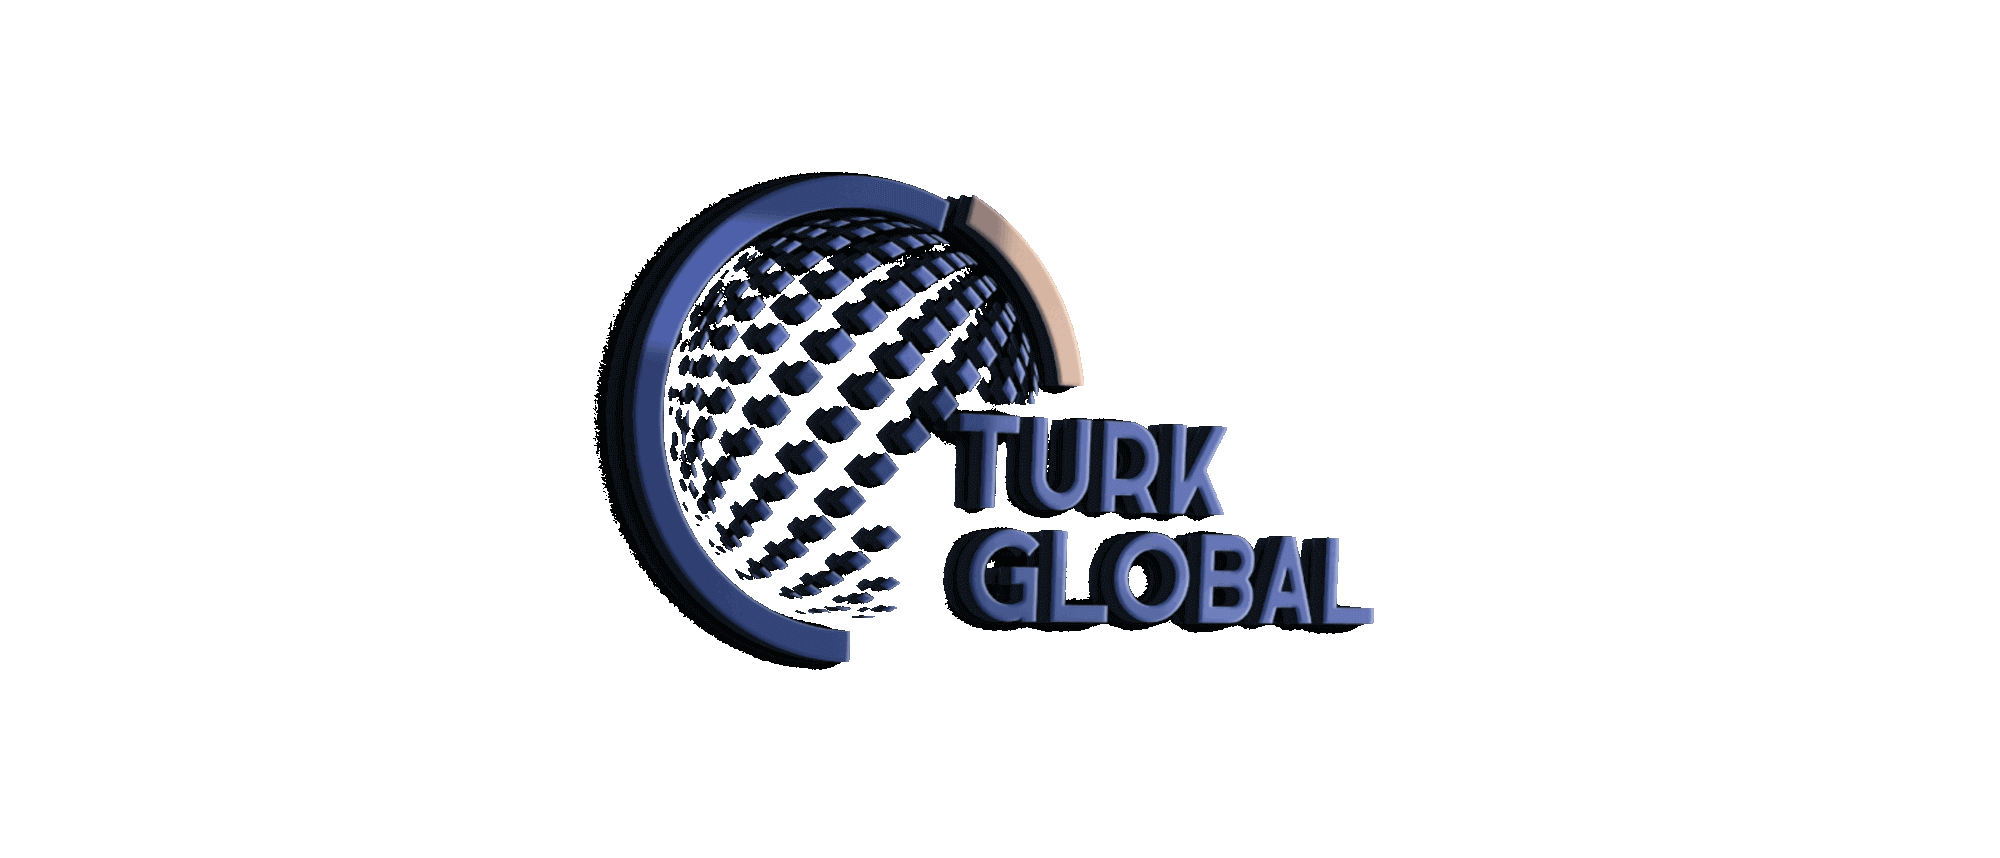 Turkglobal